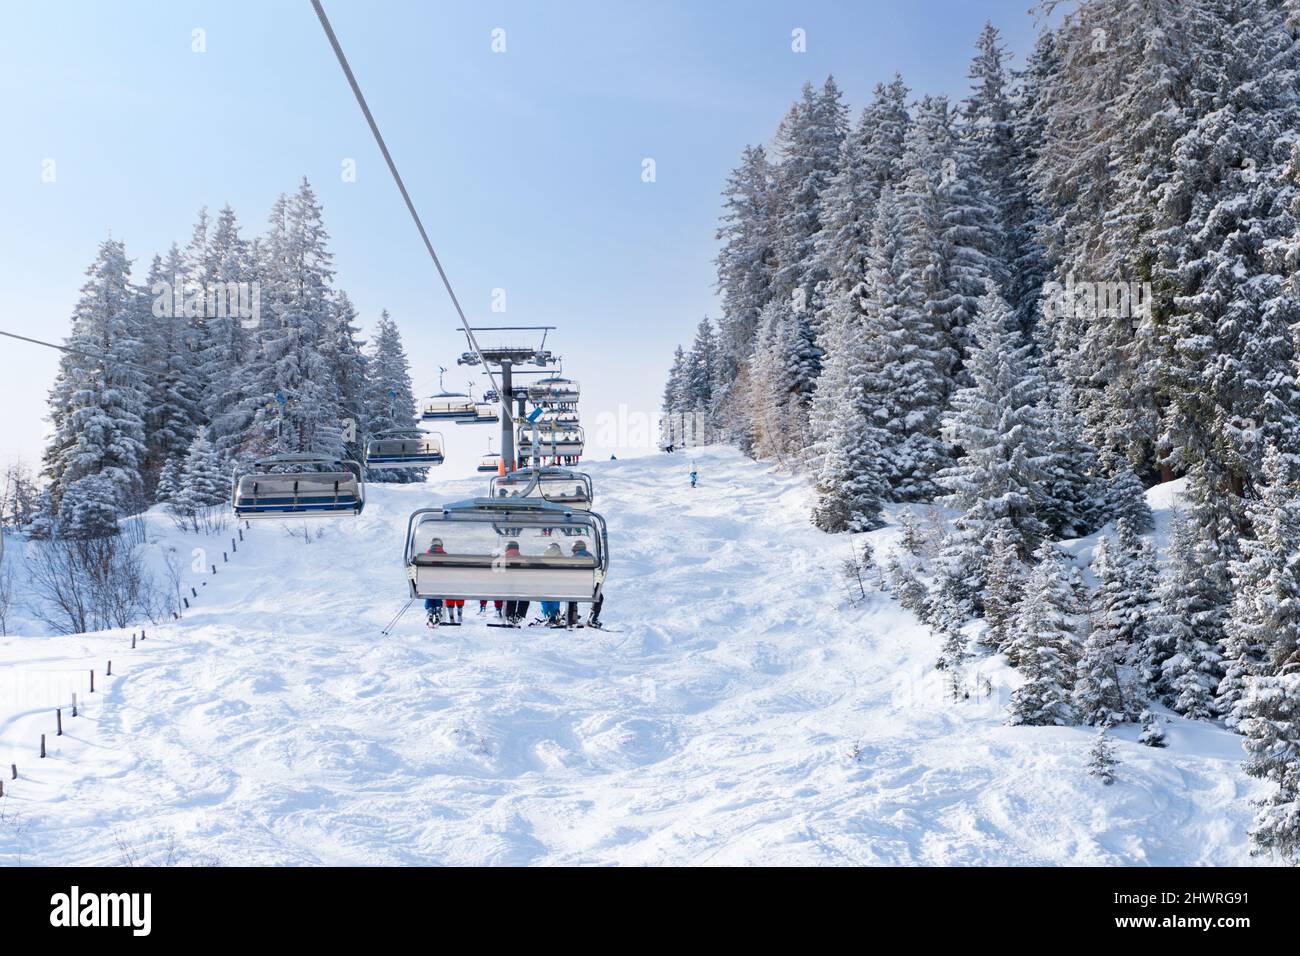 Télésiège moderne dans la station de ski pendant les vacances d'hiver. Des arbres enneigés et une piste de ski naturelle. Banque D'Images